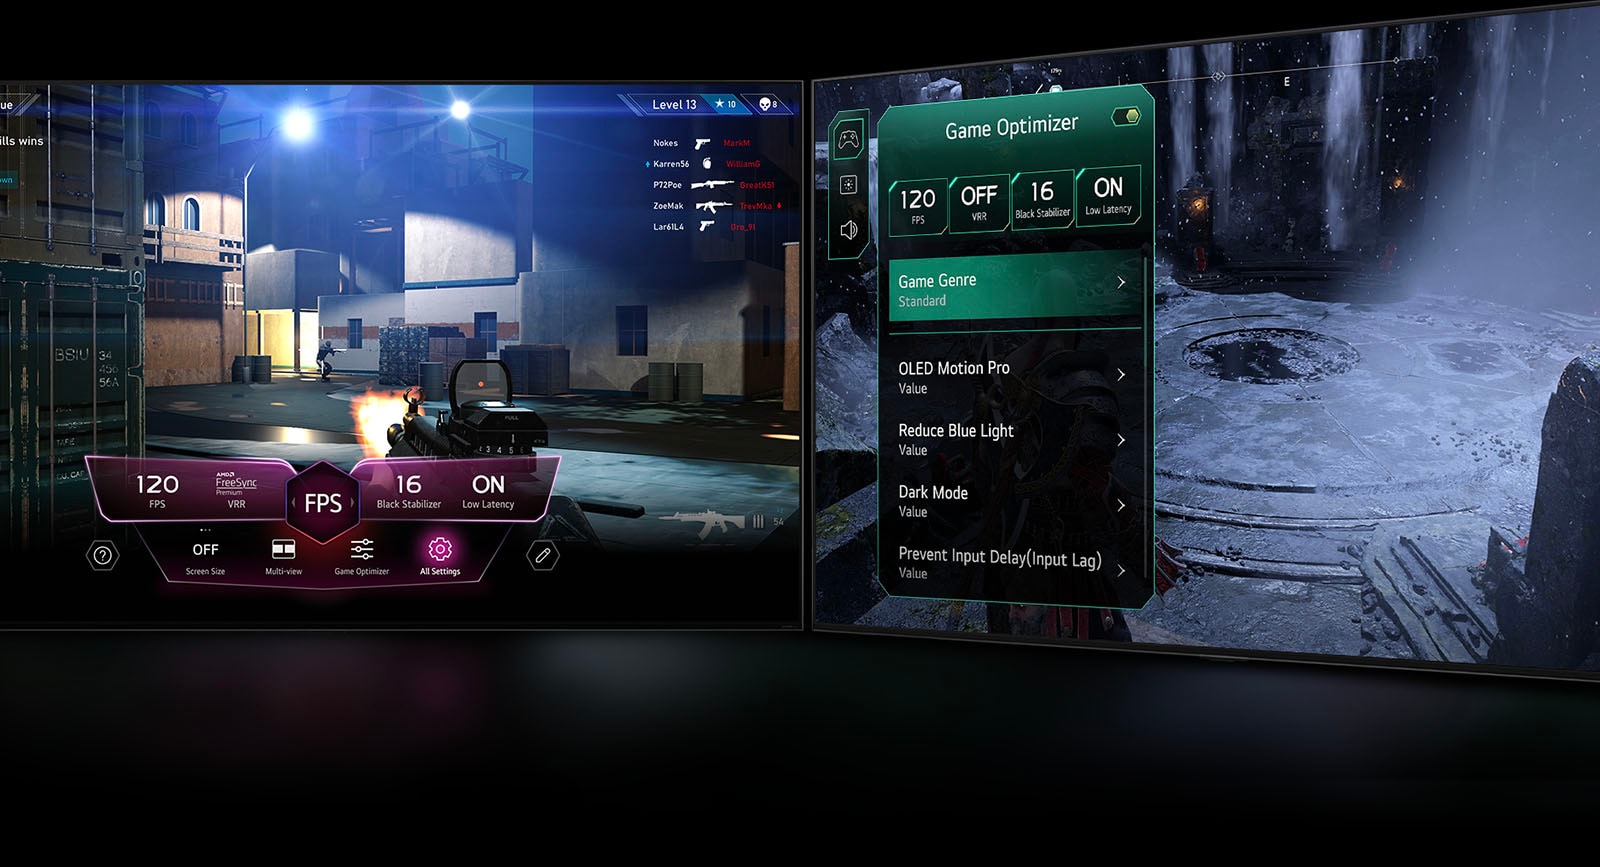 סצנת משחק ירי בגוף ראשון (FPS) עם Game Dashboard שמופיע על המסך במהלך המשחק. סצנה אפלולית וחורפית עם תפריט Game Optimizer שמופיע על פני המשחק. 